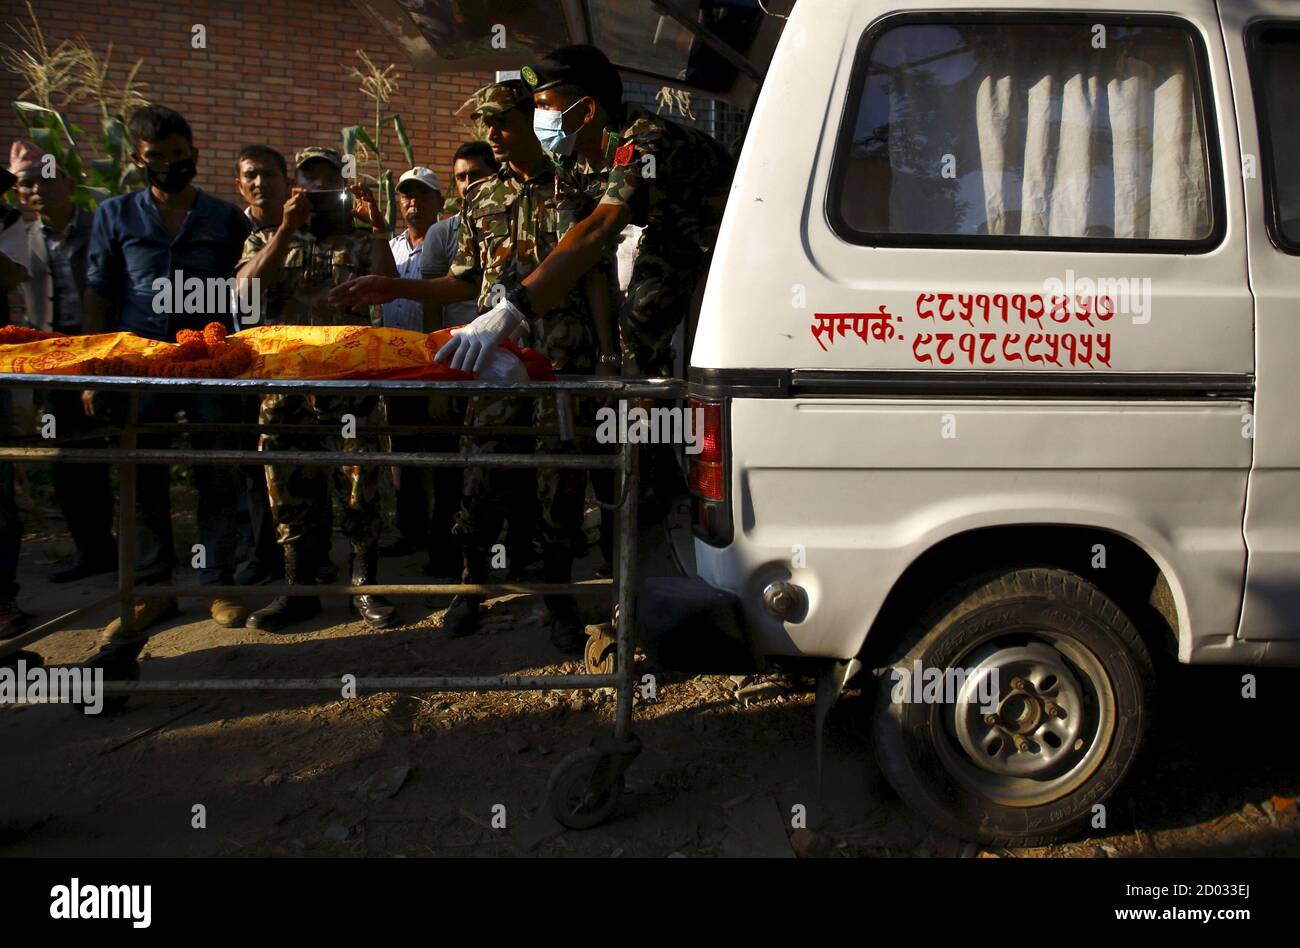 Mitarbeiter der nepalesischen Armee bereiten sich darauf vor, die Leiche eines Erdbebenopfers zu laden, das beim US-Militär UH-1Y Huey-Hubschrauberabsturz während einer Mission zur Unterstützung der Erdbebenopfer in Kathmandu, Nepal, am 8. Juni 2015 ums Leben kam. Die Leichen von fünf Erdbebenopfern, die bei dem Hubschrauberabsturz ums Leben kamen, wurden nach dem DNA-Test den Familienangehörigen übergeben. REUTERS/Navesh Chitrakar Stockfoto